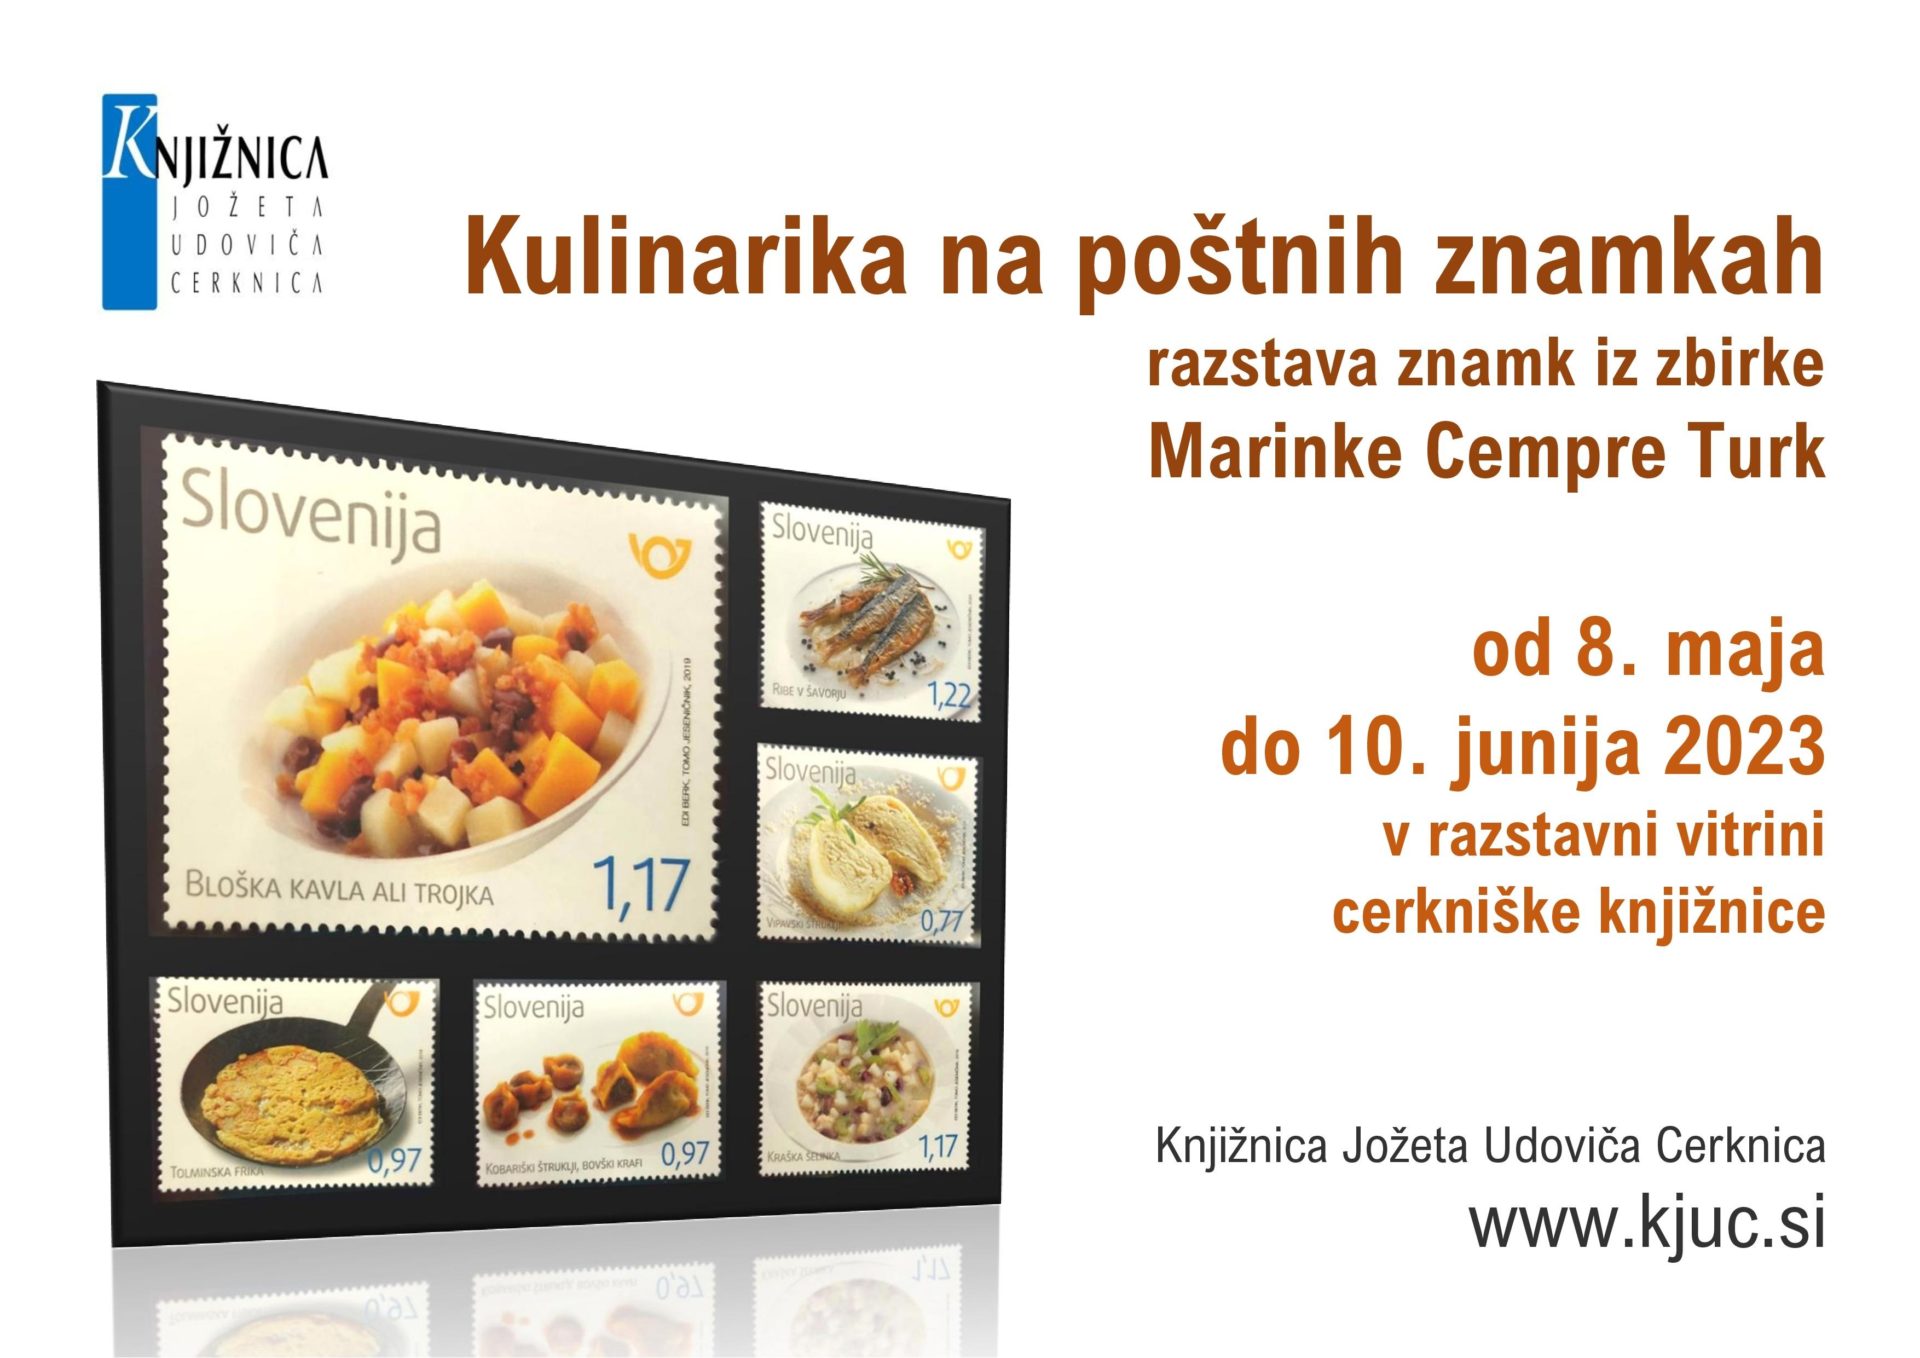 vabilo - Kulinarika na poštnih znamkah razstava znamk iz zbirke Marinke Cempre Turk